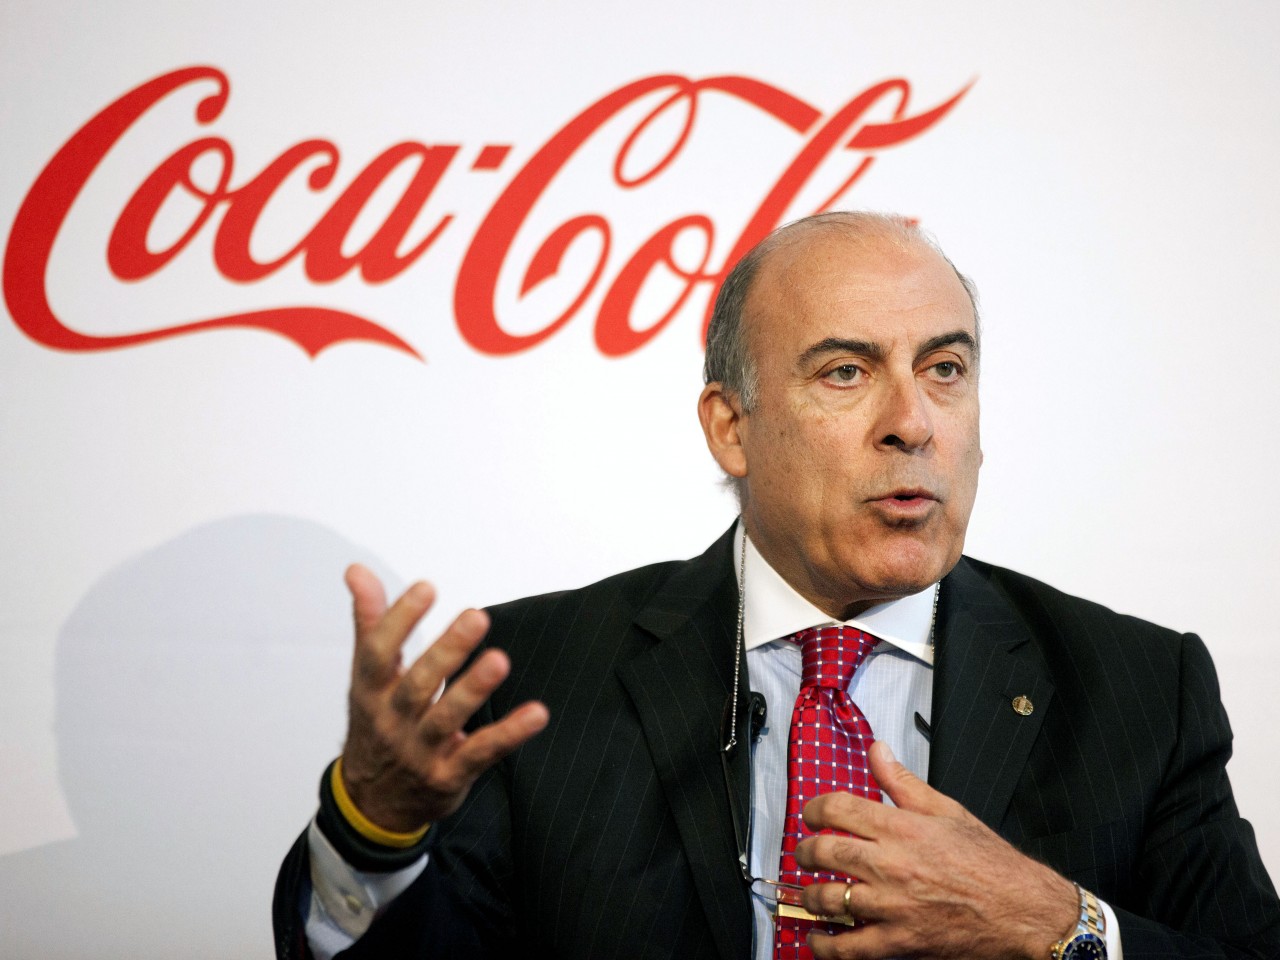 Coca Cola CEO’su Muhtar Kent’ten flaş karar